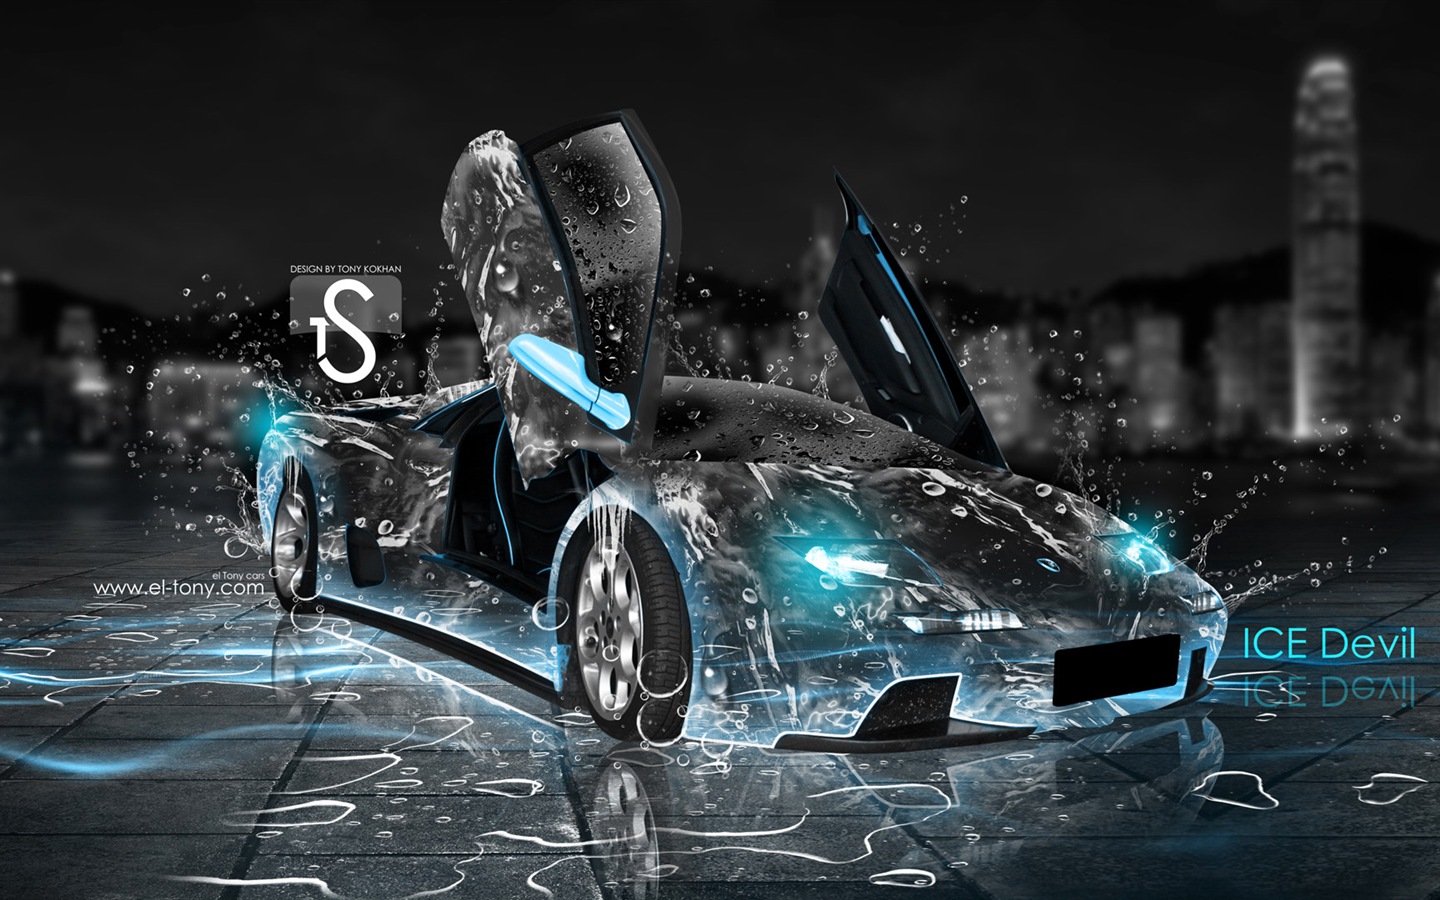 Les gouttes d'eau splash, beau fond d'écran de conception créative de voiture #1 - 1440x900